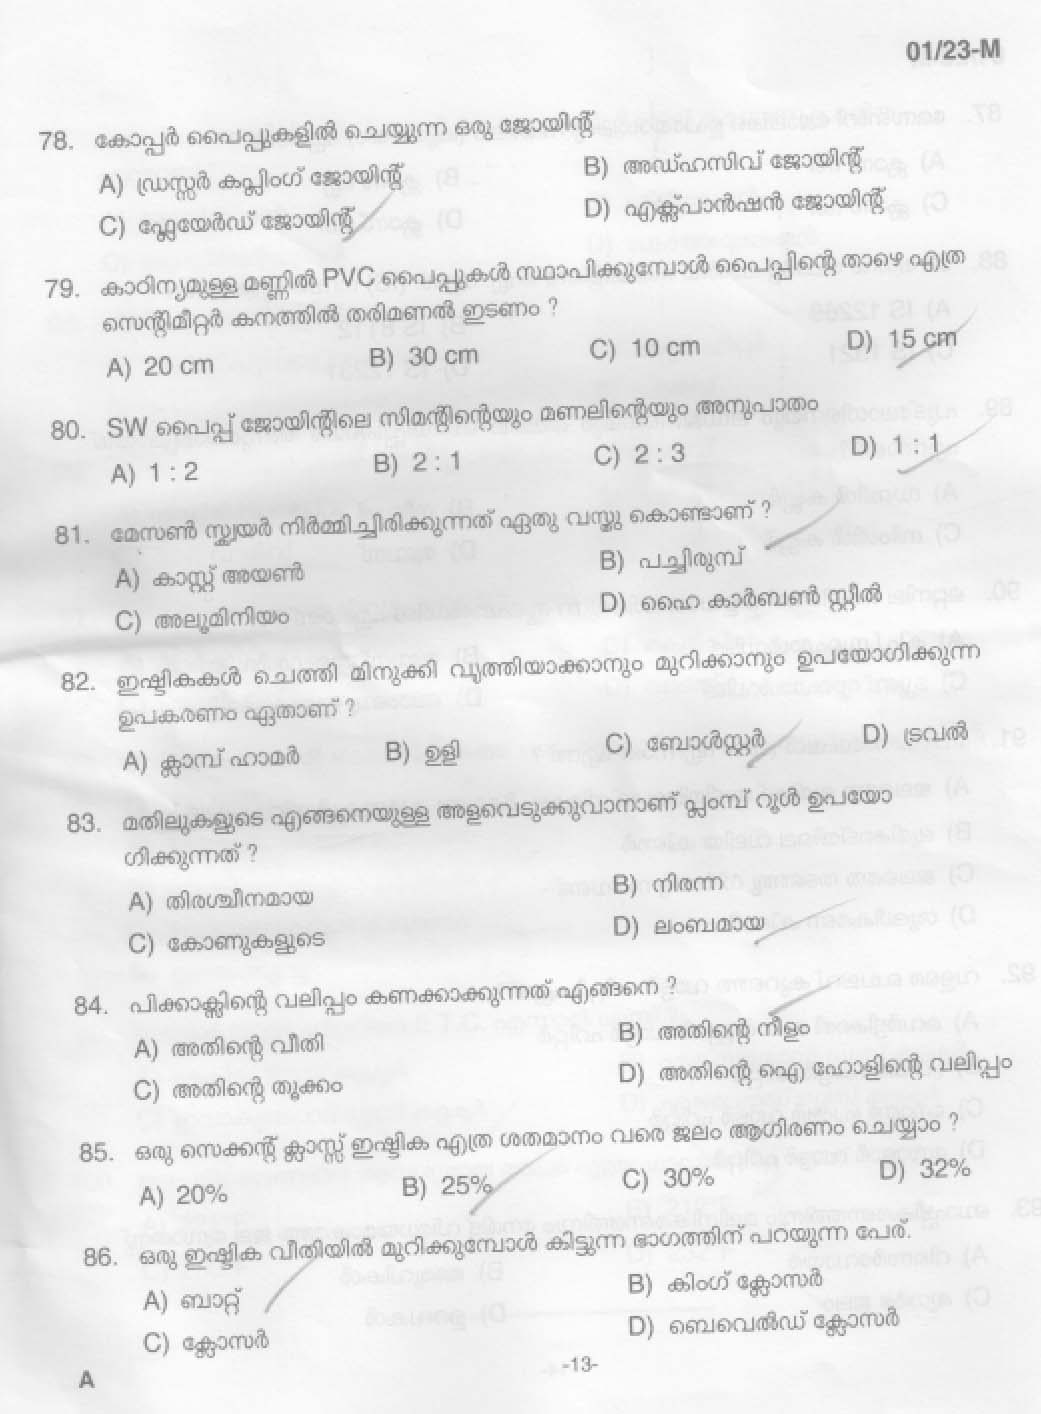 KPSC Plumber and Operator Malayalam Exam 2023 Code 0012023 M 12